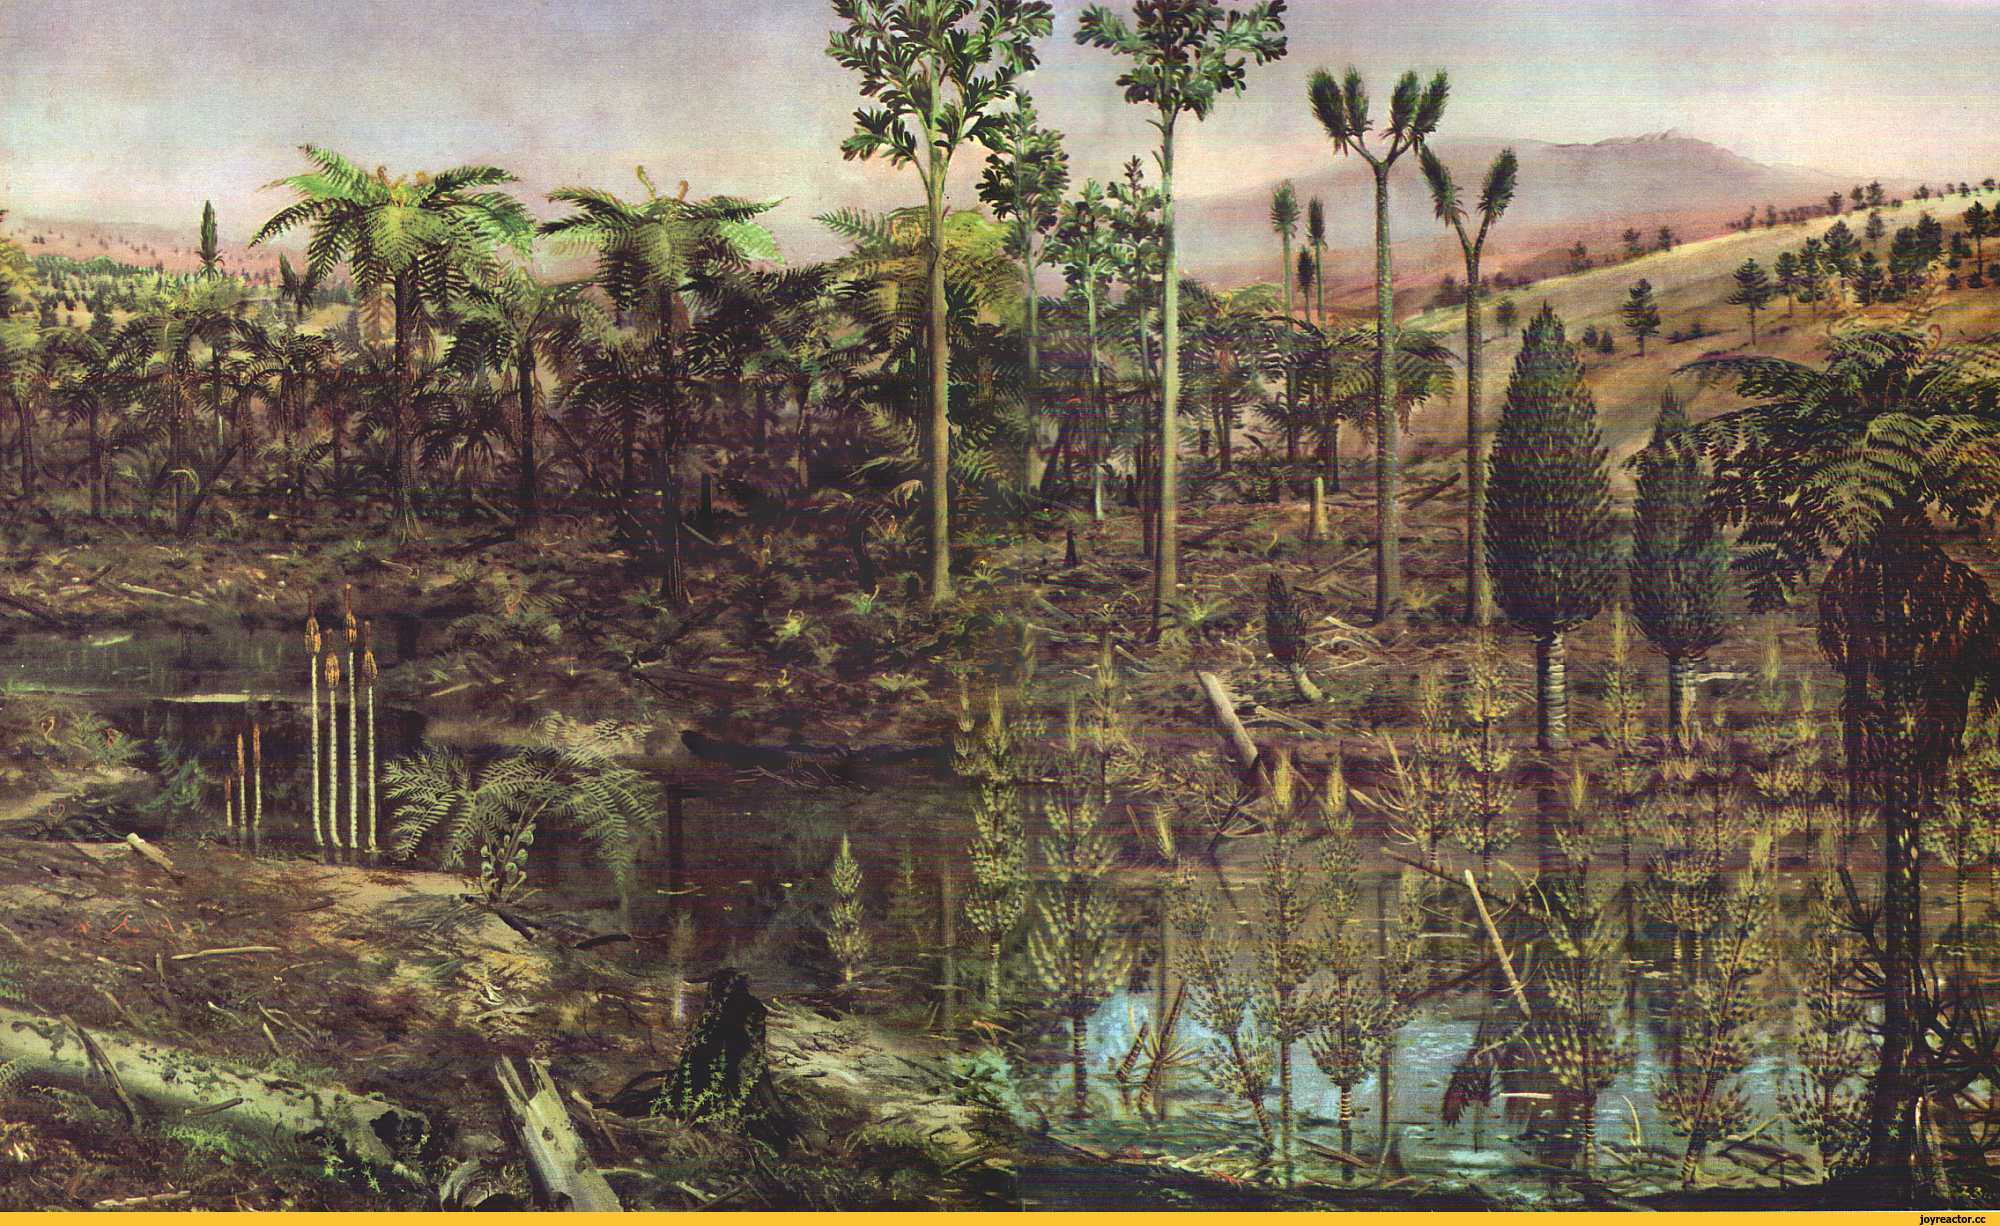 Пермский период, или пермь (299 — 252 млн лет назад)